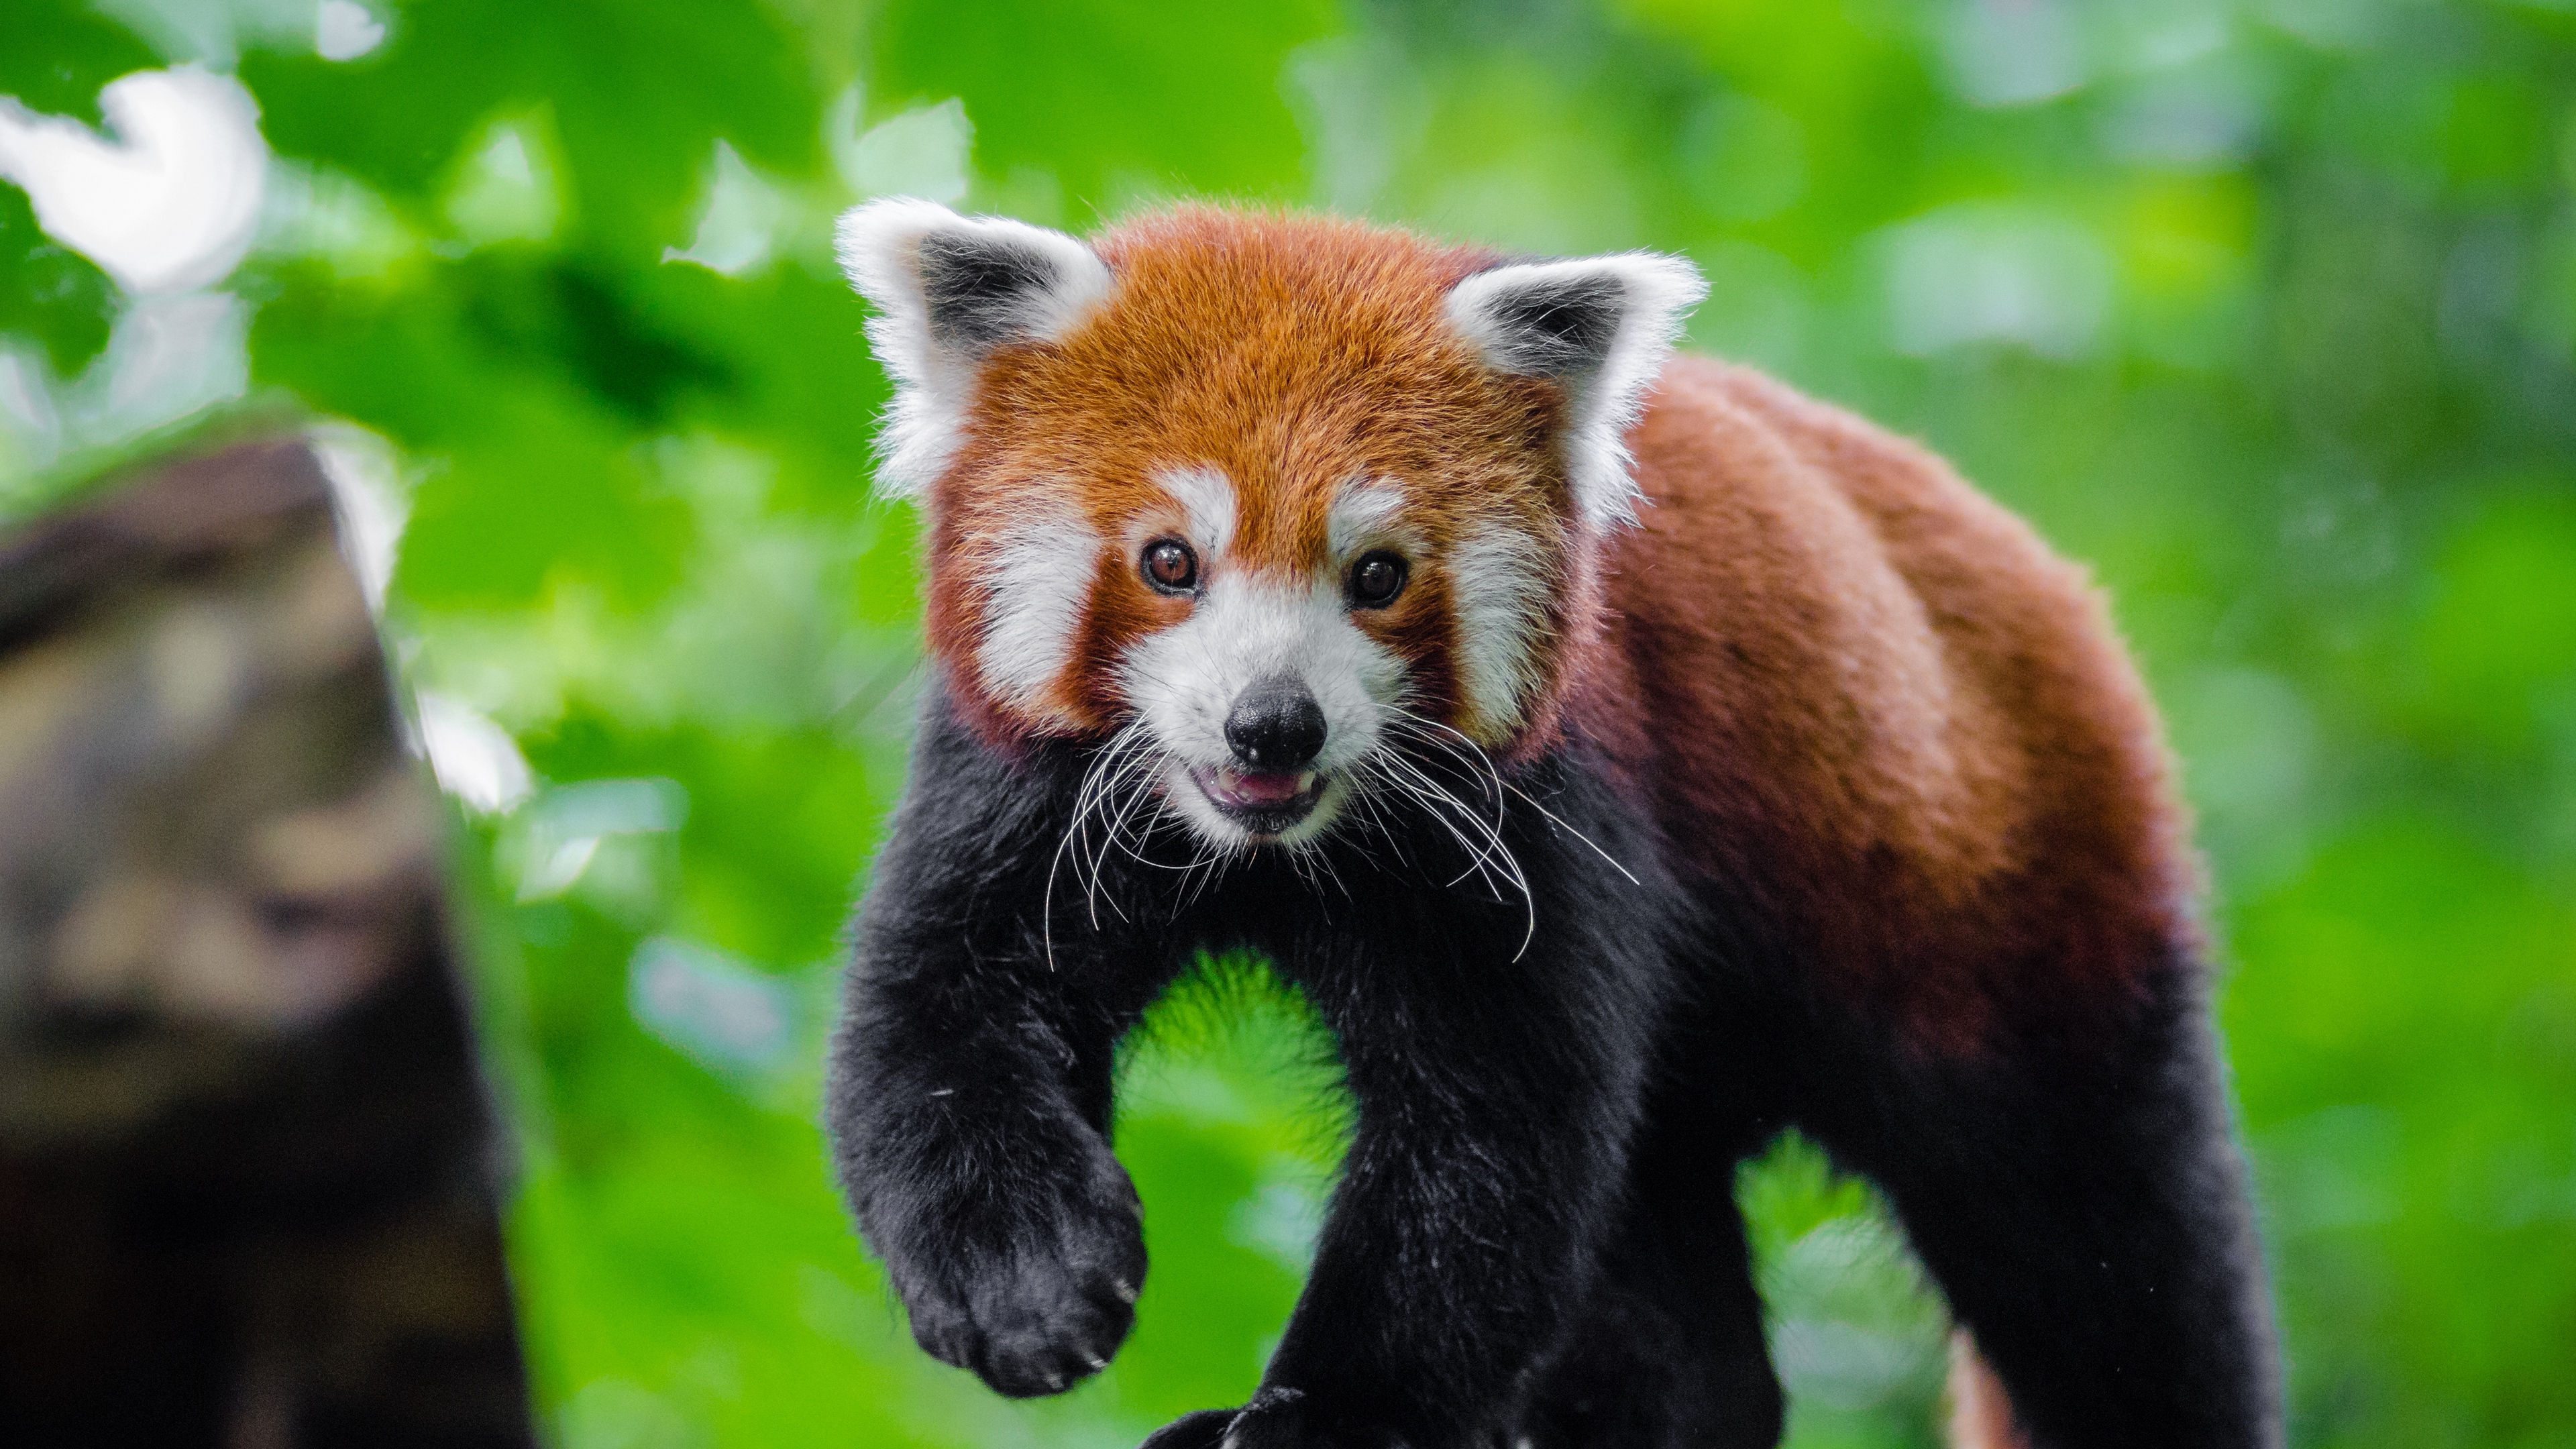 small panda red panda cute 4k 1542242785 - small panda, red panda, cute 4k - small panda, red panda, Cute